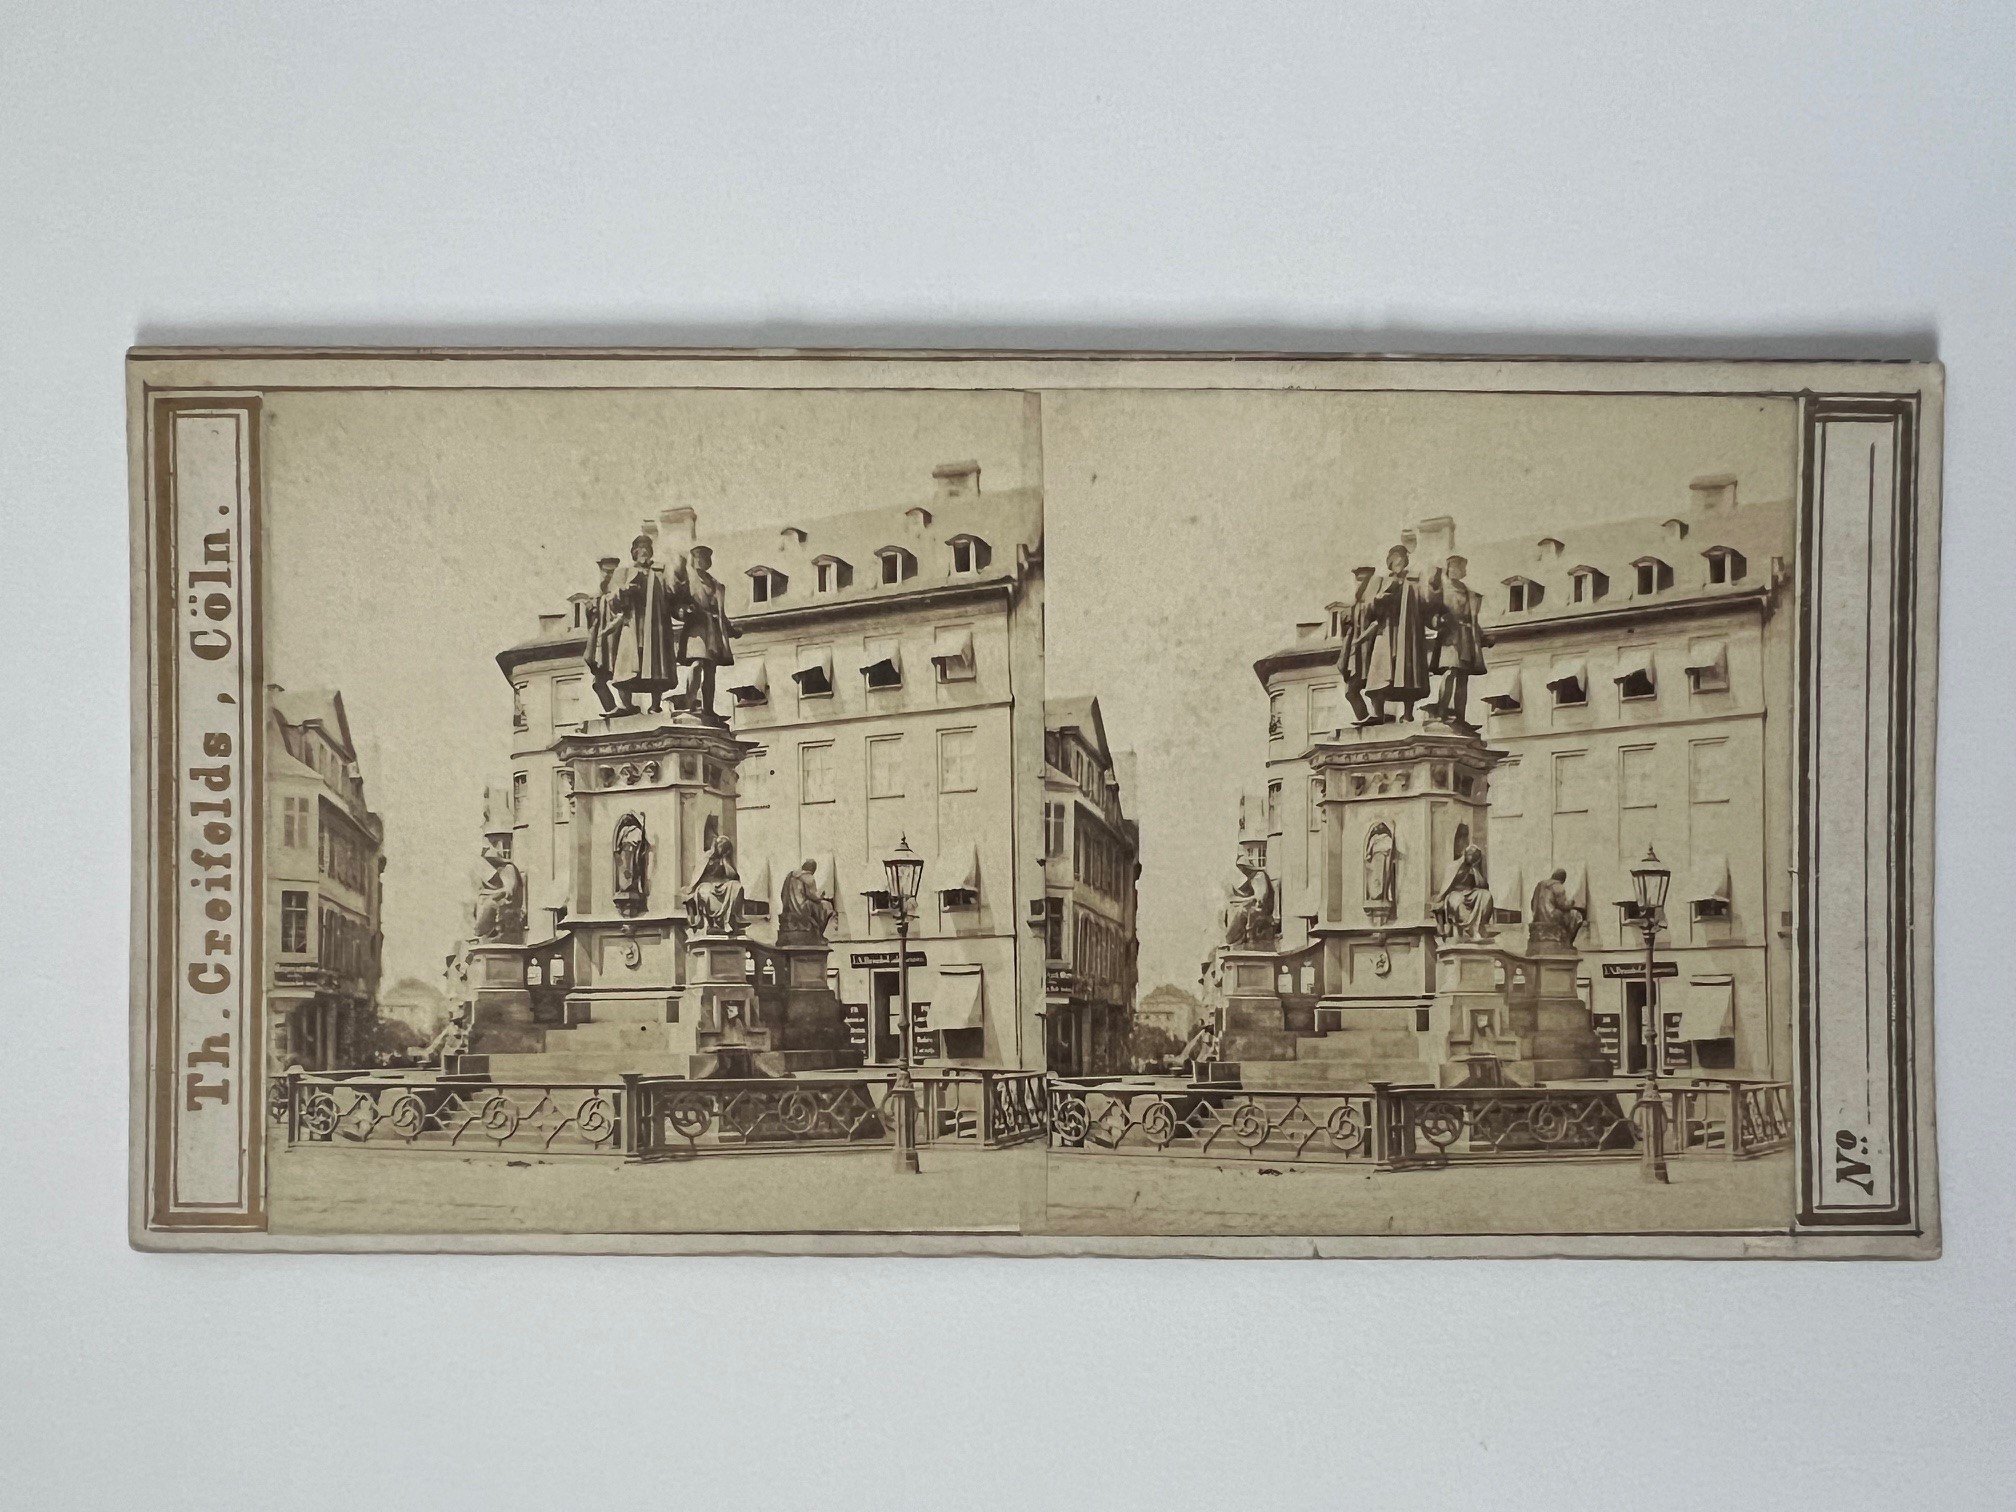 Stereobild, Theodor Creifelds, Frankfurt, Nr. 268, Guttenberg-Monument, ca. 1870. (Taunus-Rhein-Main - Regionalgeschichtliche Sammlung Dr. Stefan Naas CC BY-NC-SA)